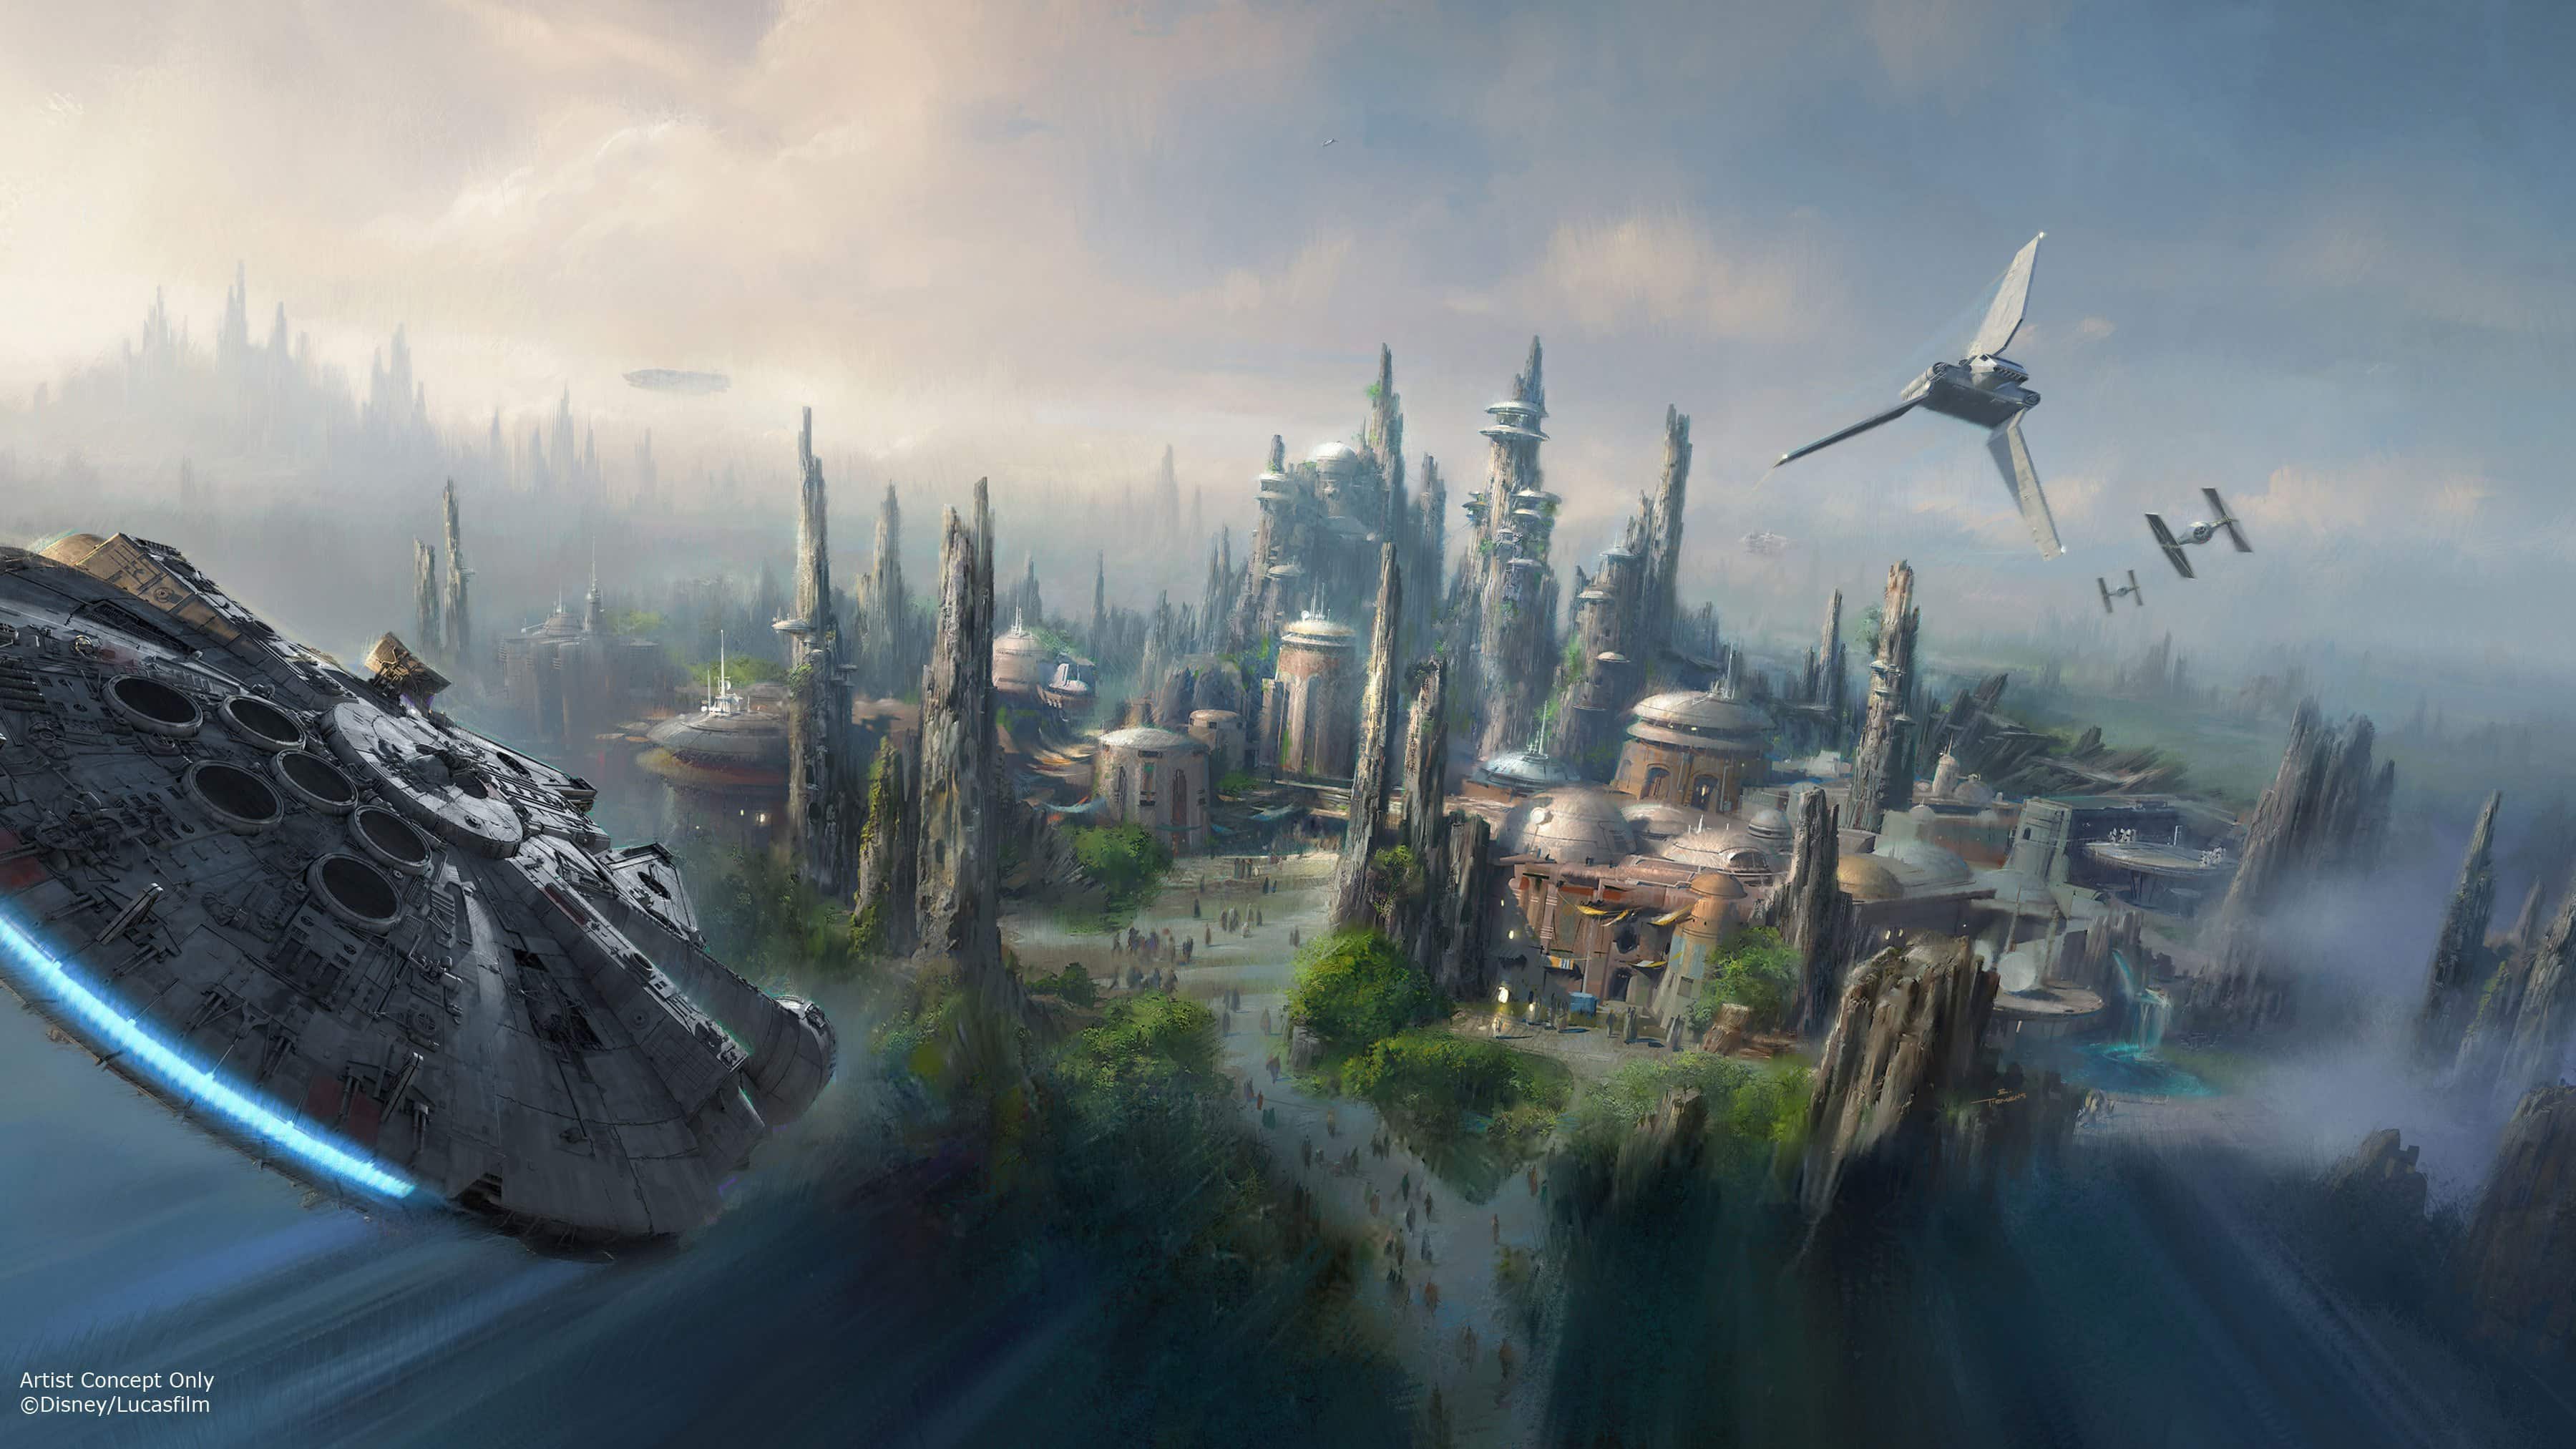 Việc ghé thăm khu vực Galaxy\'s Edge tại Disney World, Hollywood Studios là một trải nghiệm không thể bỏ qua cho tất cả những người yêu thích Star Wars. Khu vực này đã tạo ra một thế giới hoàn toàn mới, mang đến cho bạn cảm giác đang được du hành giữa các hành tinh của Star Wars. Xem hình ảnh liên quan để có được cái nhìn rõ hơn về khu vực này nhé!